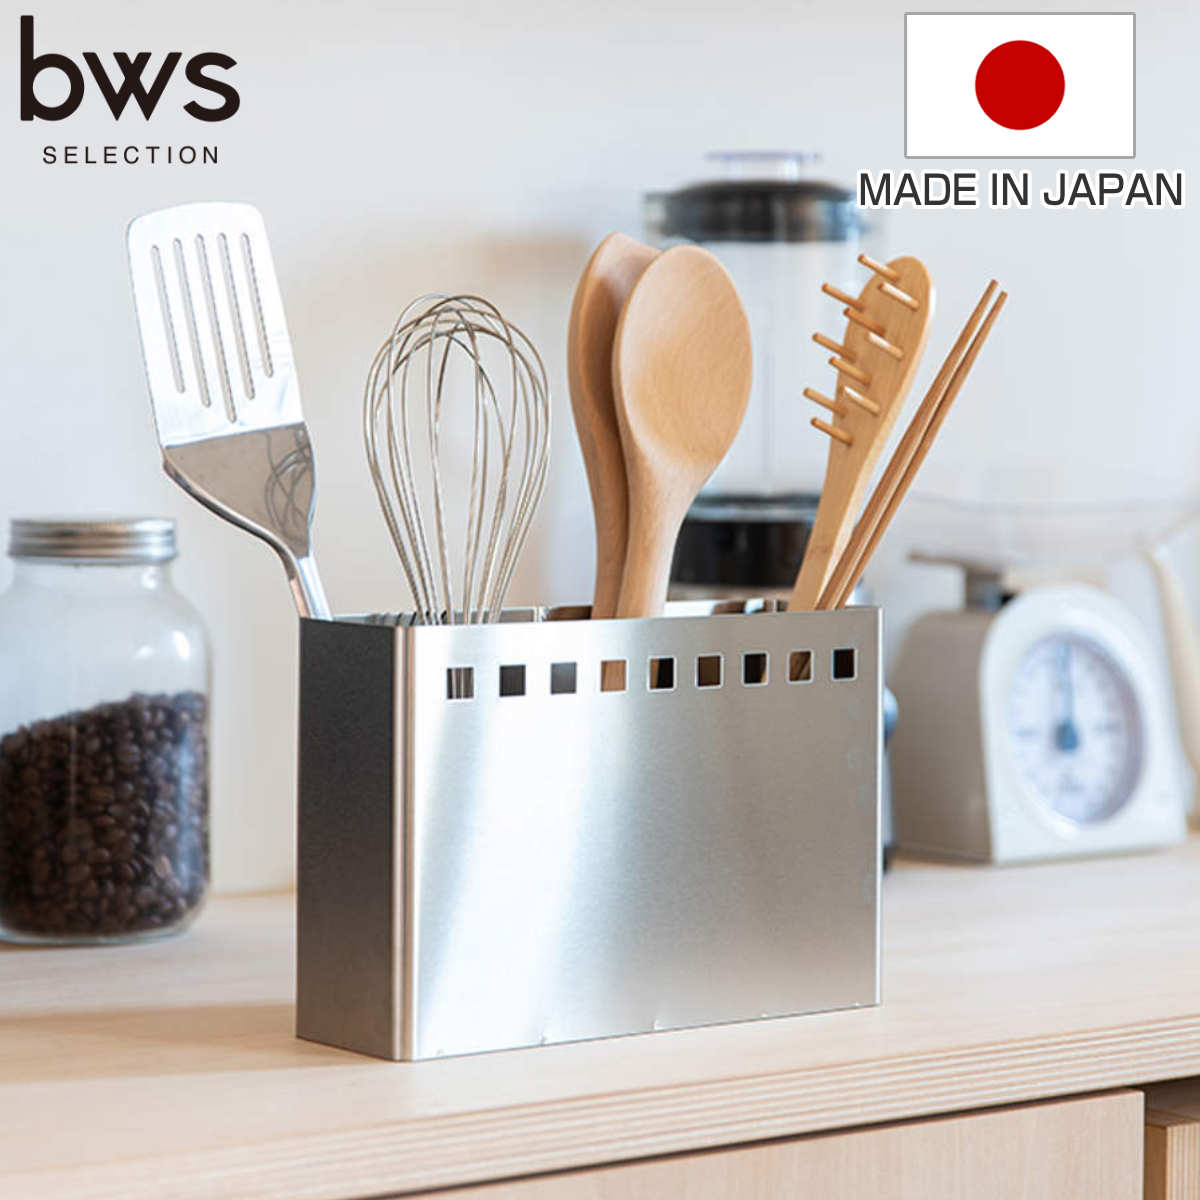 キッチンツールスタンド ワイド bws SELECTION （ 日本製 ステンレス ビーワースセレクション ツールスタンド キッチンスタンド 調理道具